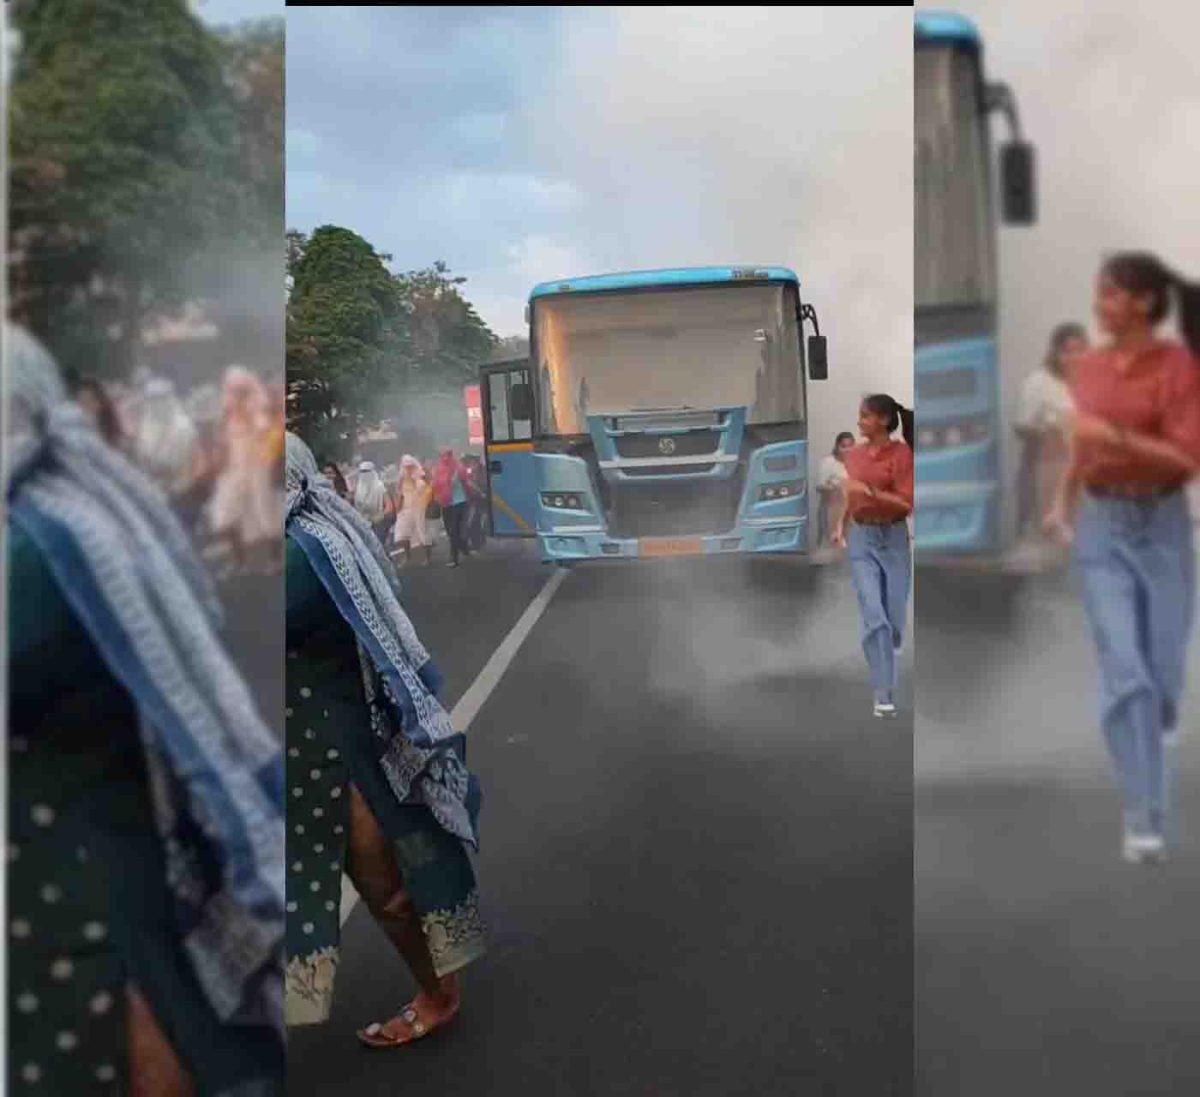 Indore News : सिटी बस में अचानक लगी आग, कूदकर भागे यात्री